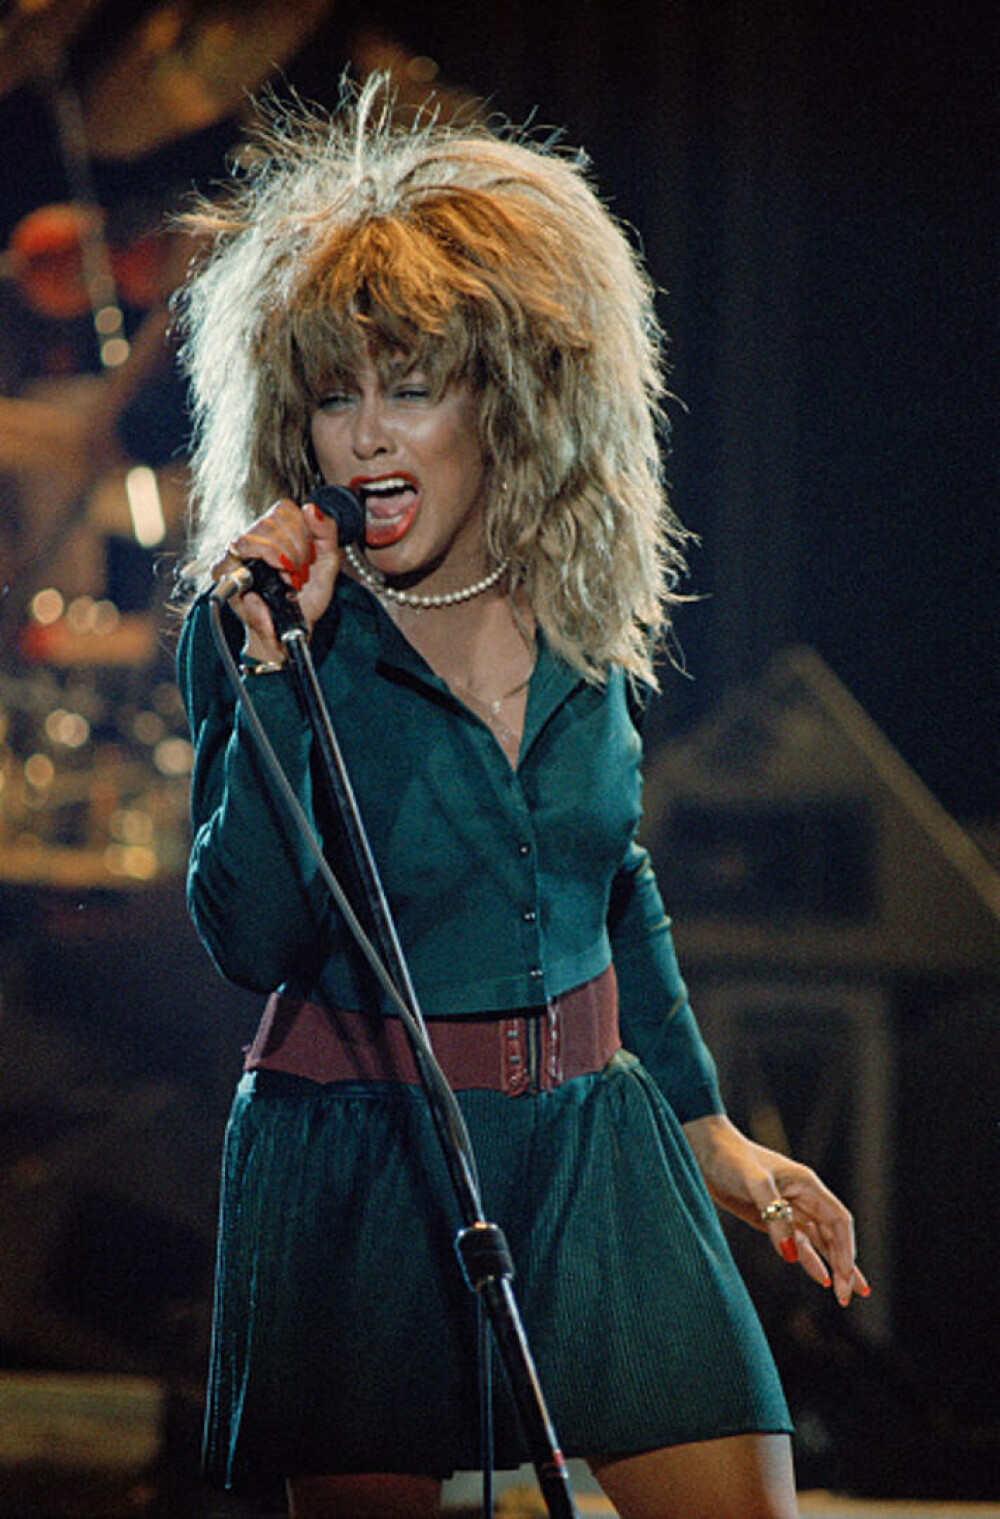 Tina Turner - viața tragică a unui artist legendar. Cântăreața a luat în calcul sinuciderea asistată - Imaginea 15